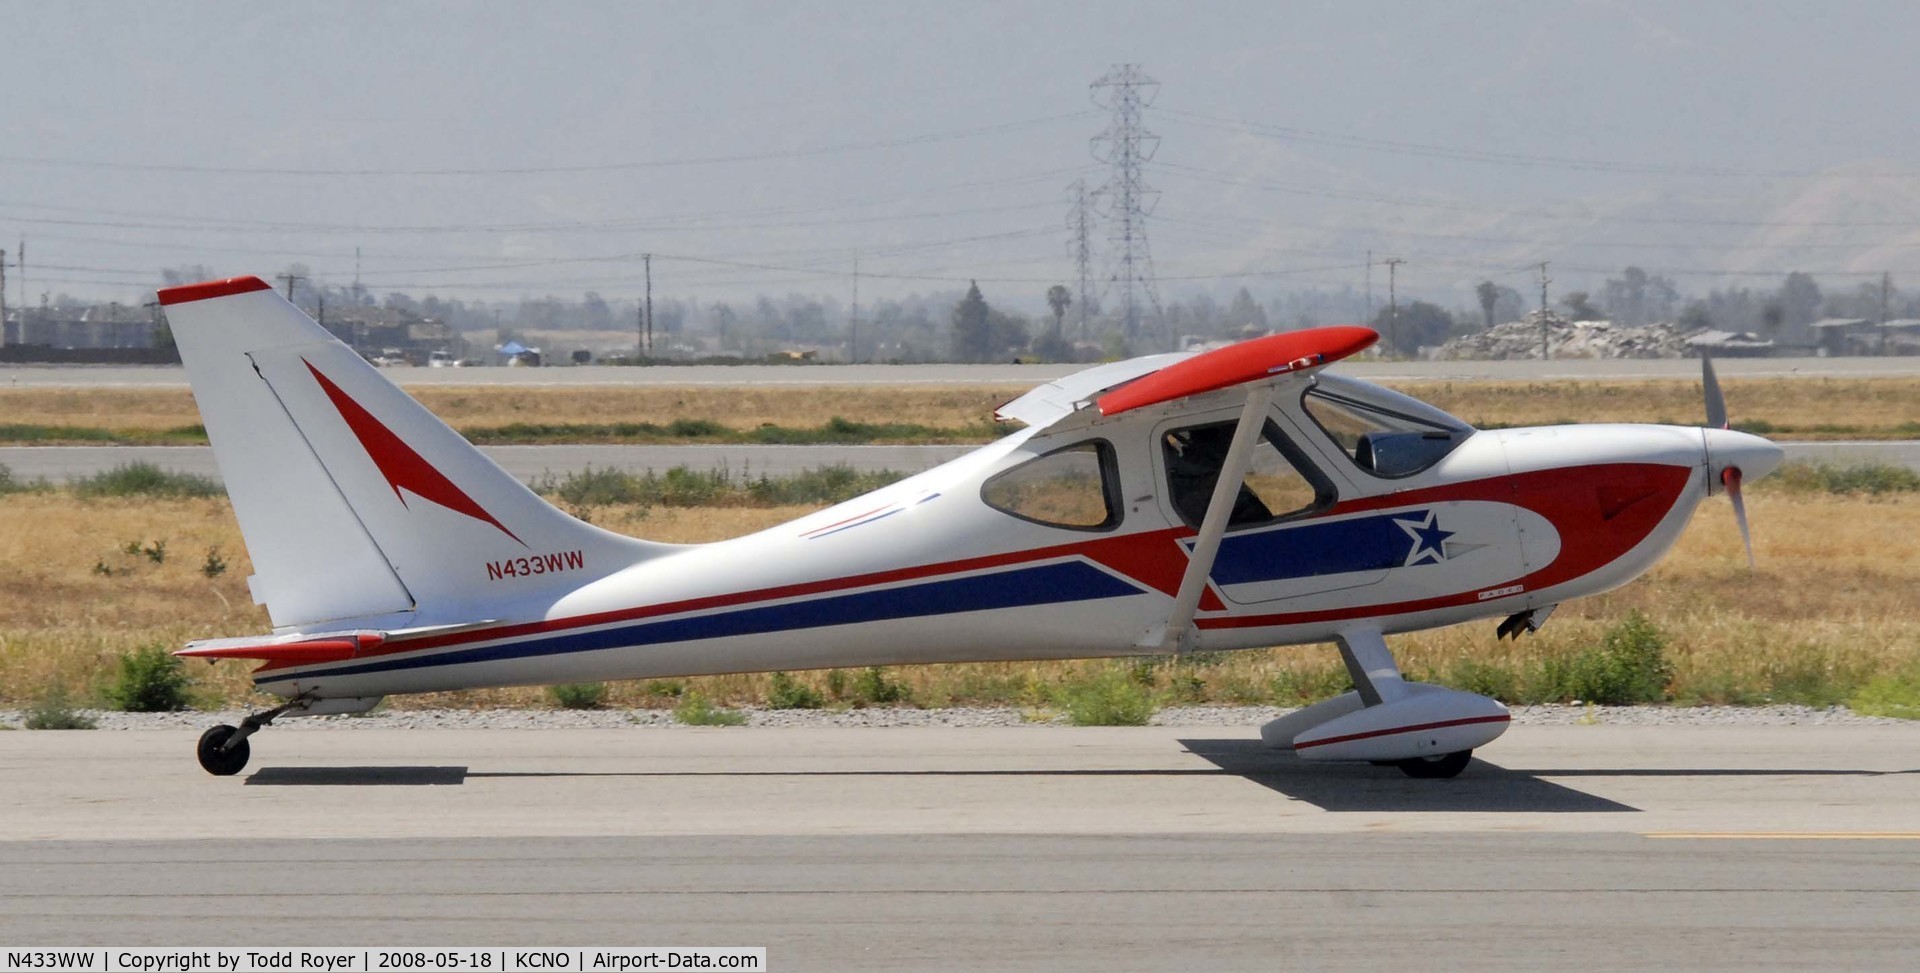 N433WW, 2000 Stoddard-Hamilton Glastar C/N 5156, Chino Airshow 2008